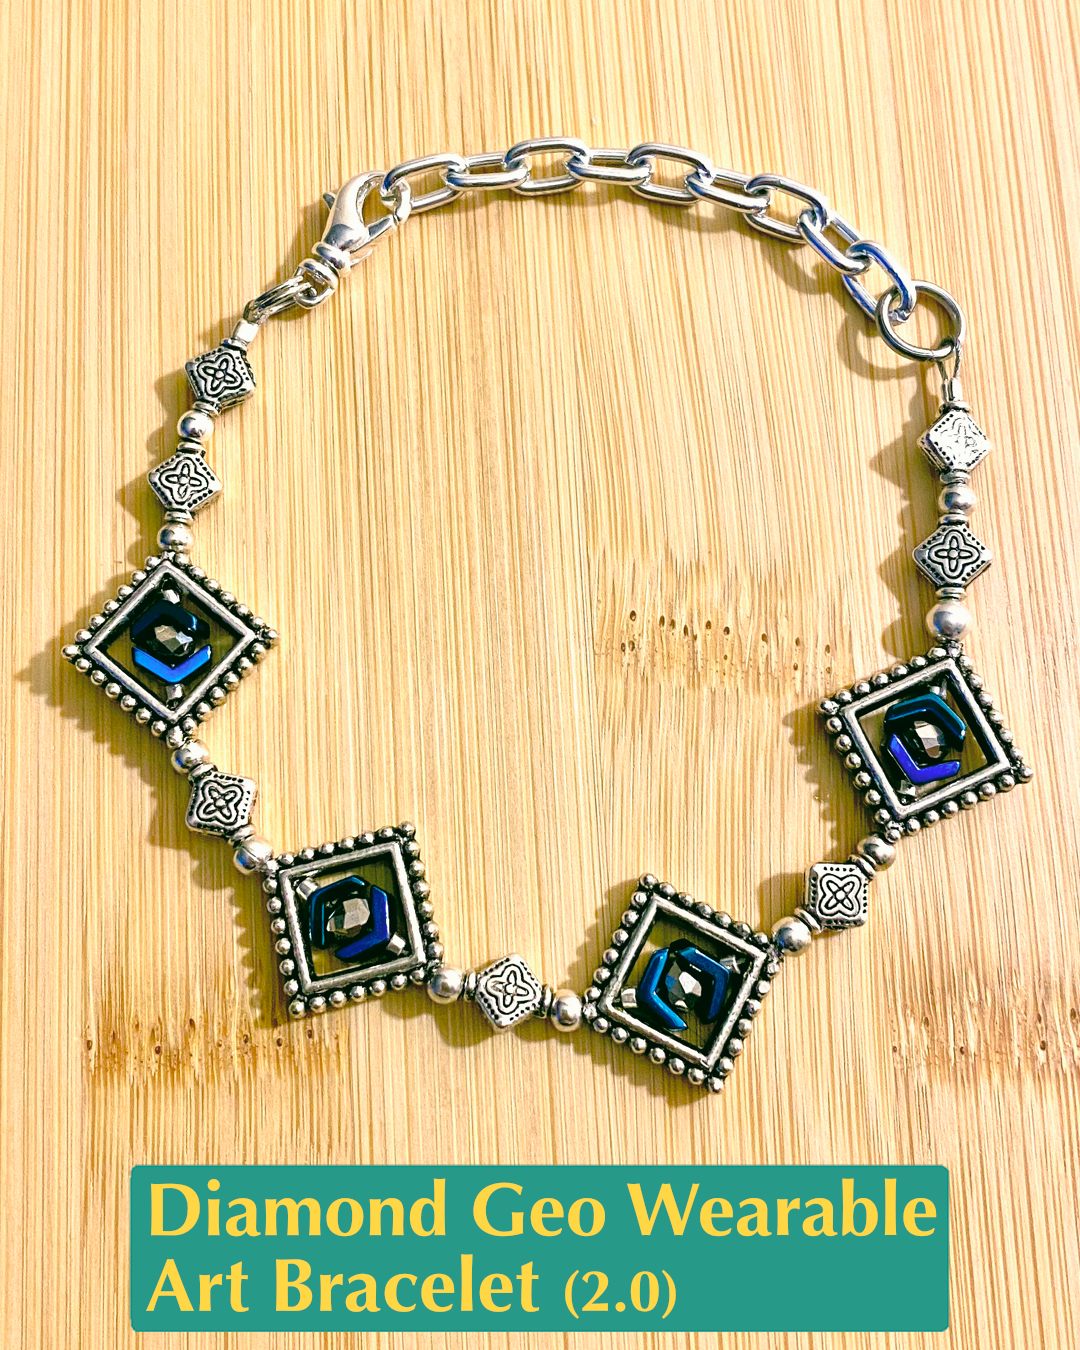 Diamond Geo Wearable Art Bracelet 2.0